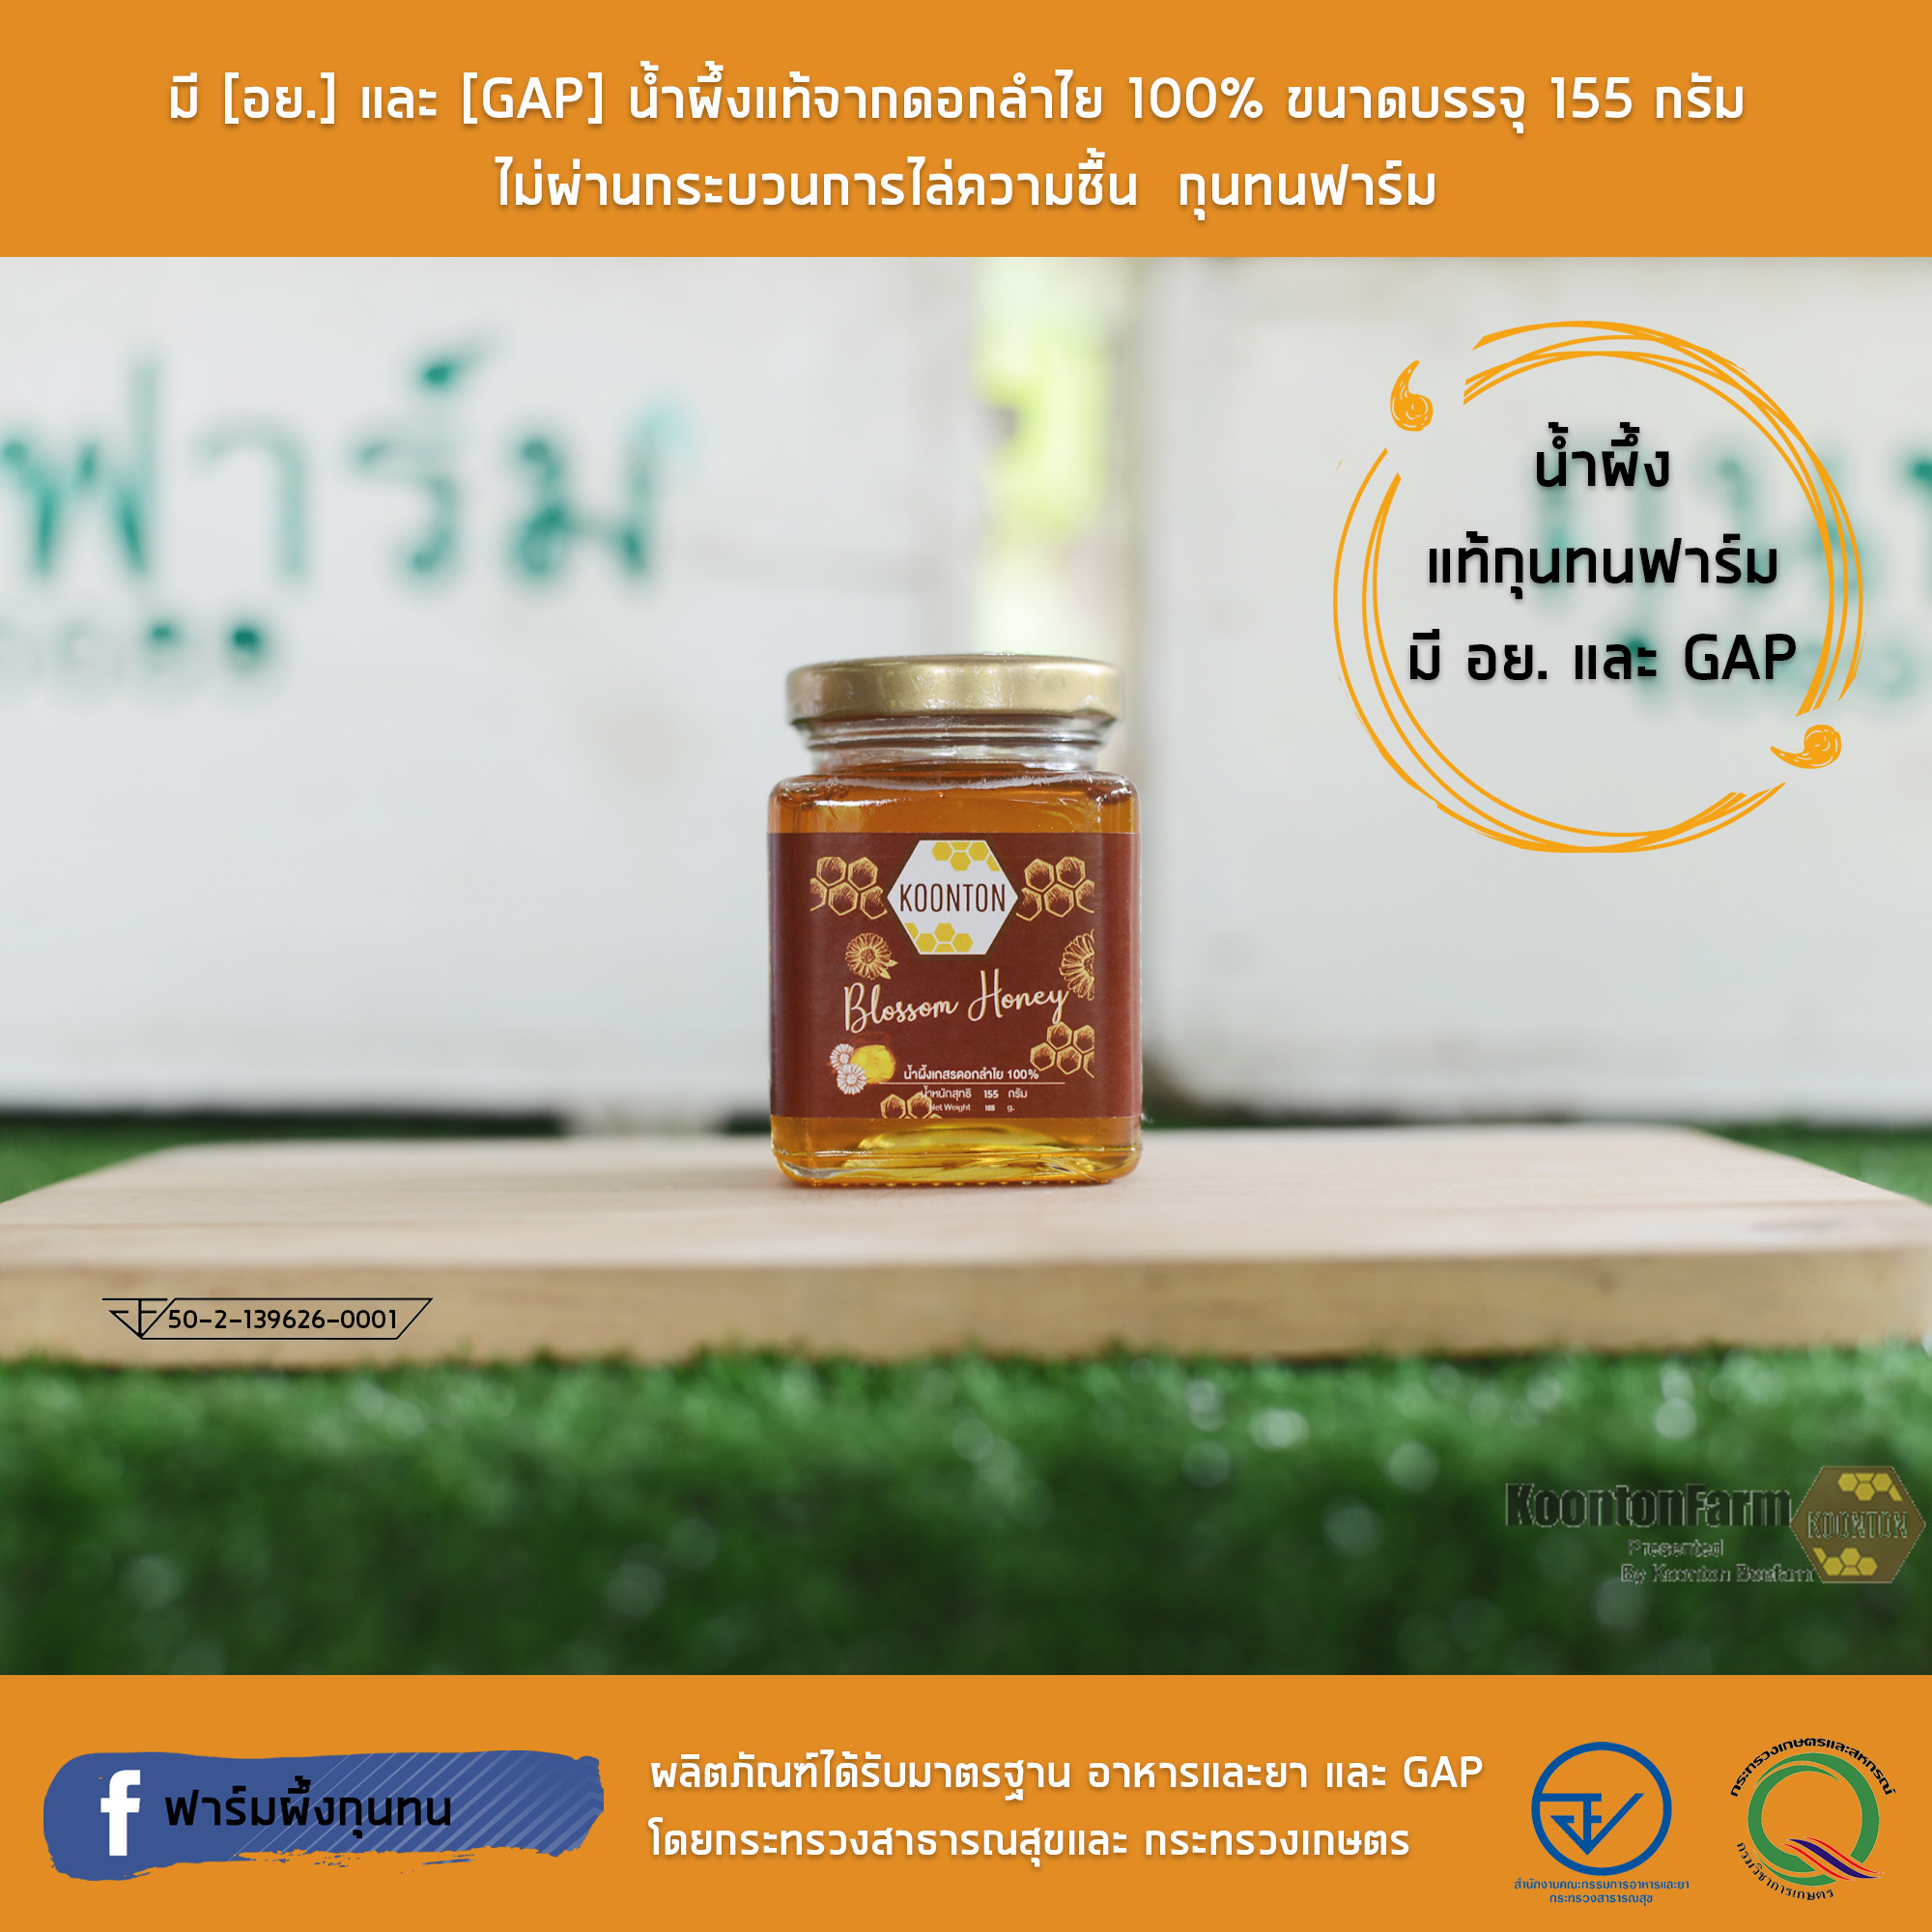 มี [อย.] และ [GAP] น้ำผึ้งแท้จากดอกลำไย 100% ขนาดบรรจุ 155 กรัม  ไม่ผ่านกระบวนการไล่ความชื้น  กุนทนฟาร์ม